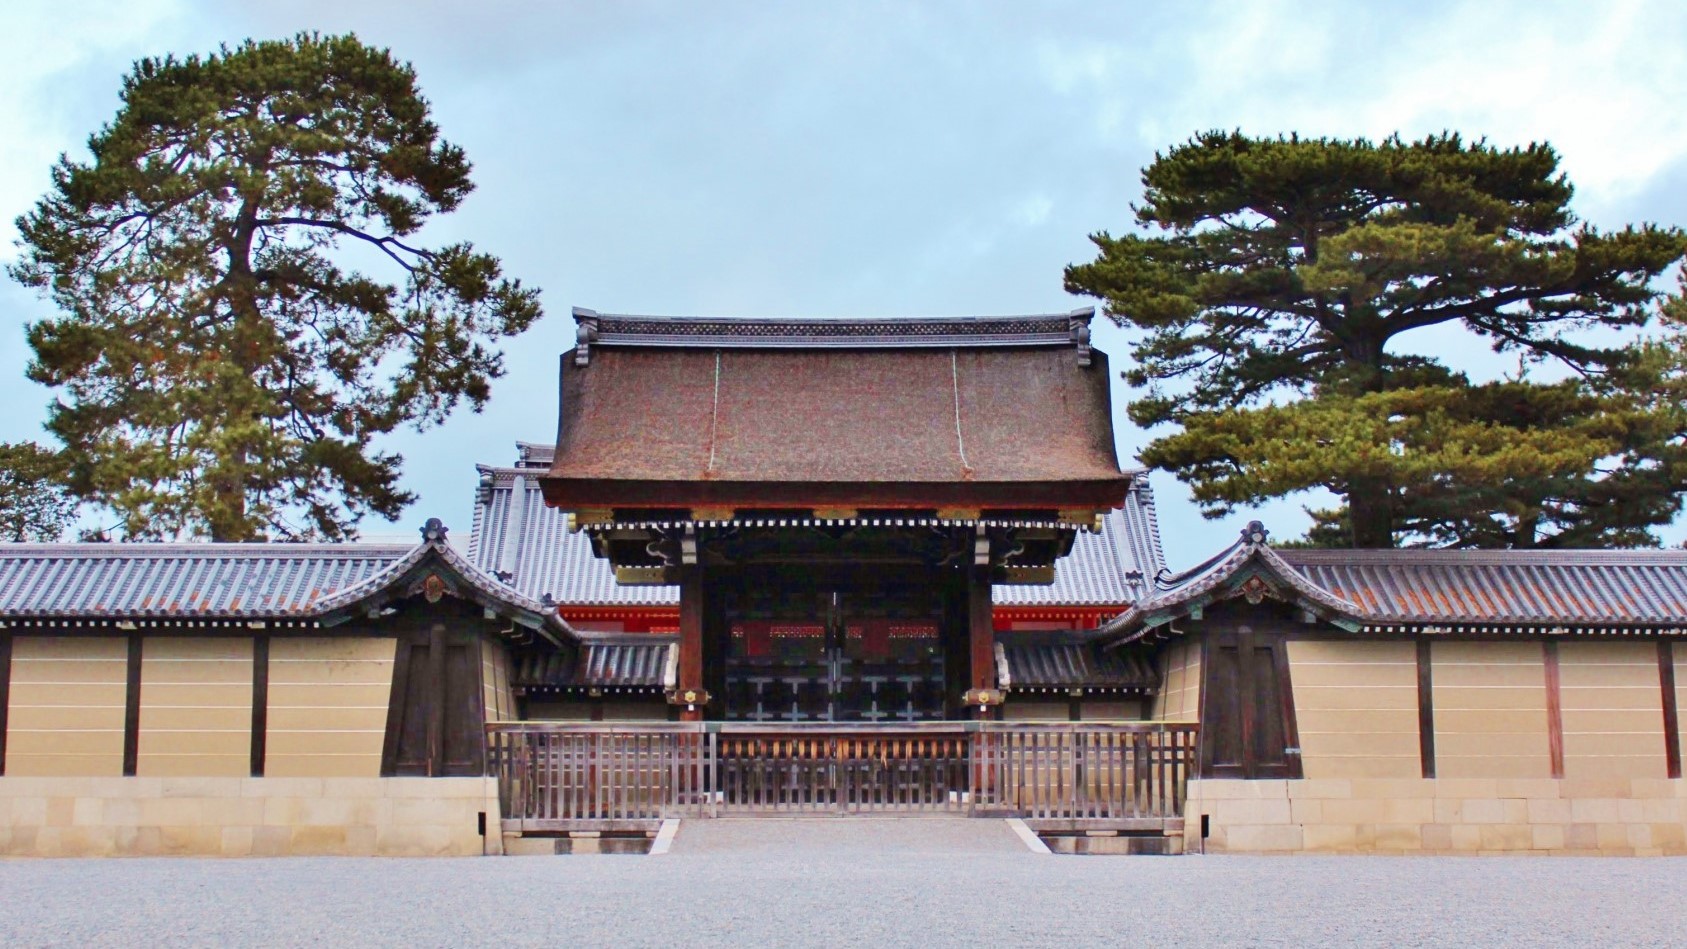 京都御所平安時代から千年以上にわたり天皇がお住まいになり政事が執られた京都御所。